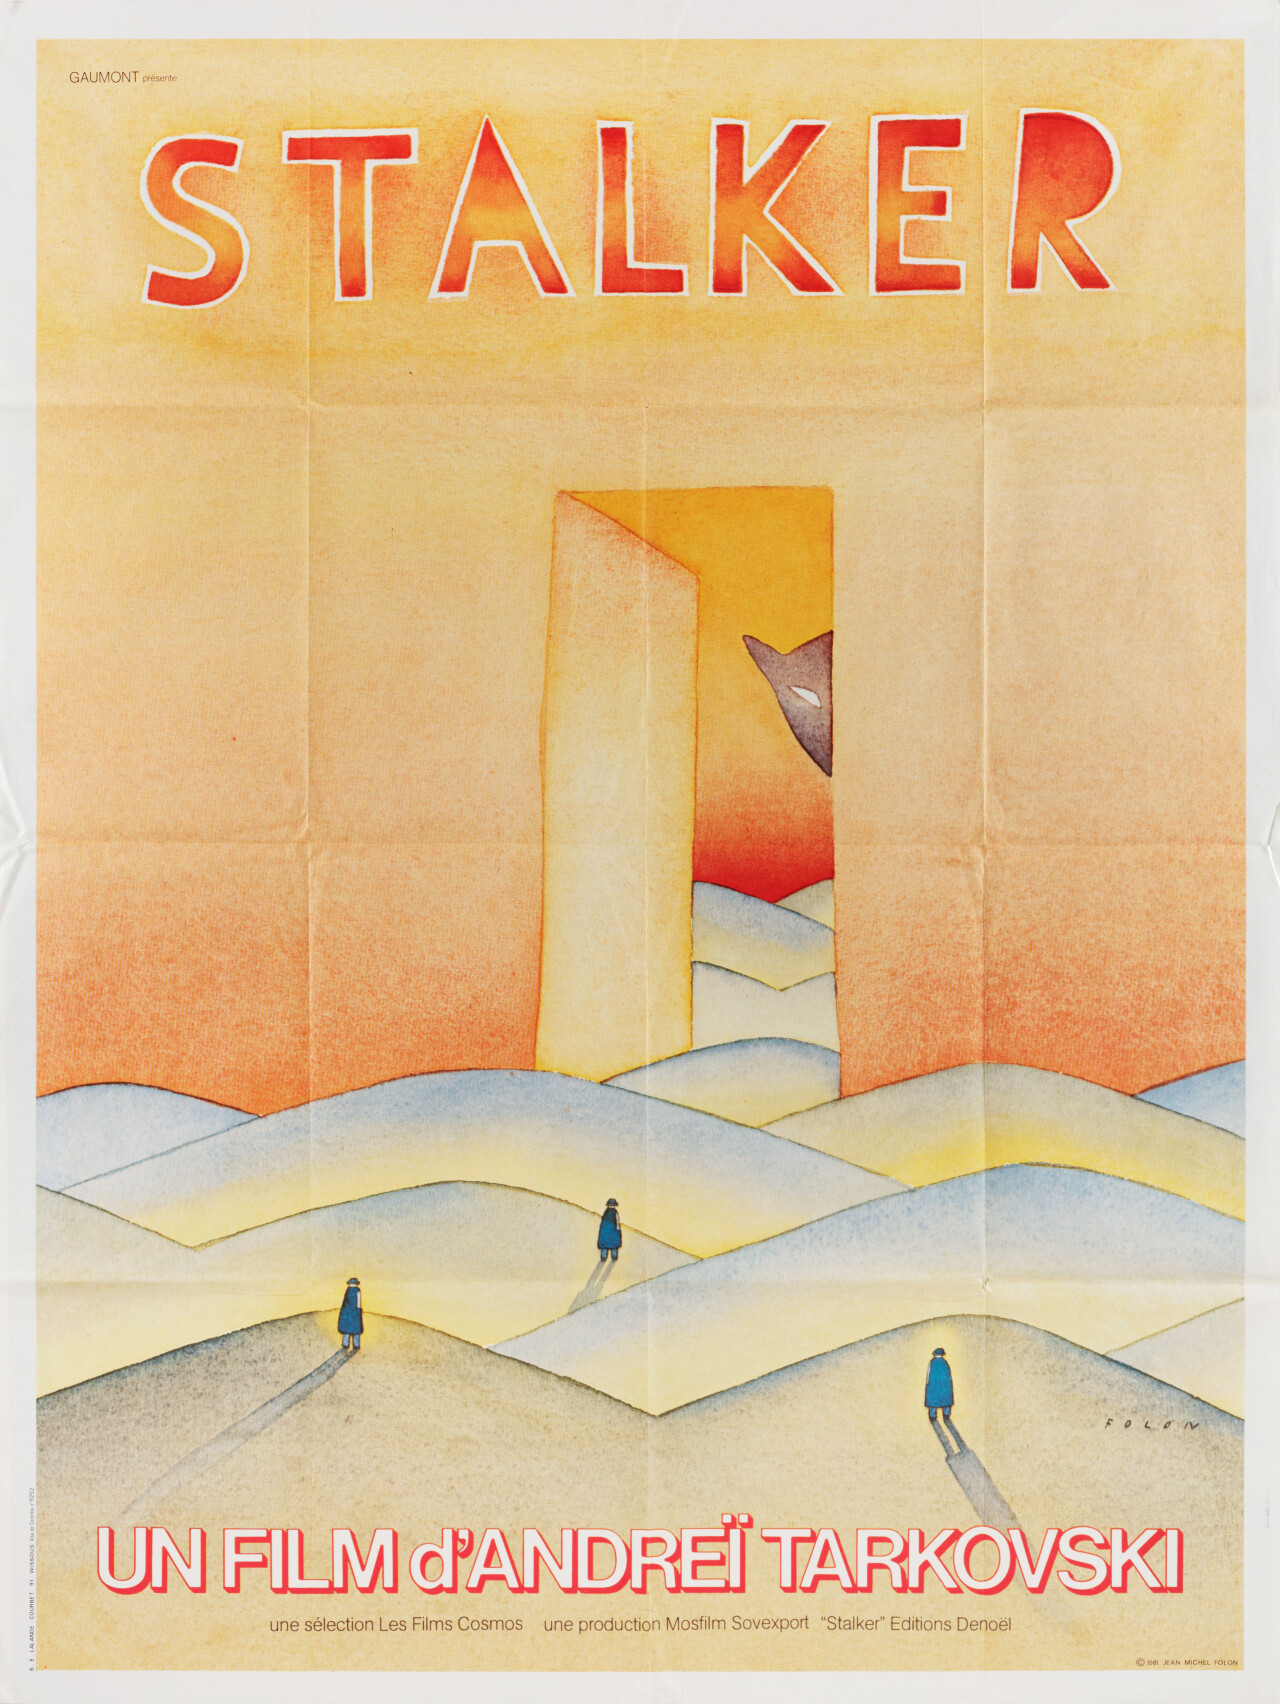 Сталкер (Stalker, 1979), режиссёр Андрей Тарковский, минималистичный постер к фильму (Франция, 1981 год), автор Жан-Мишель Фолон